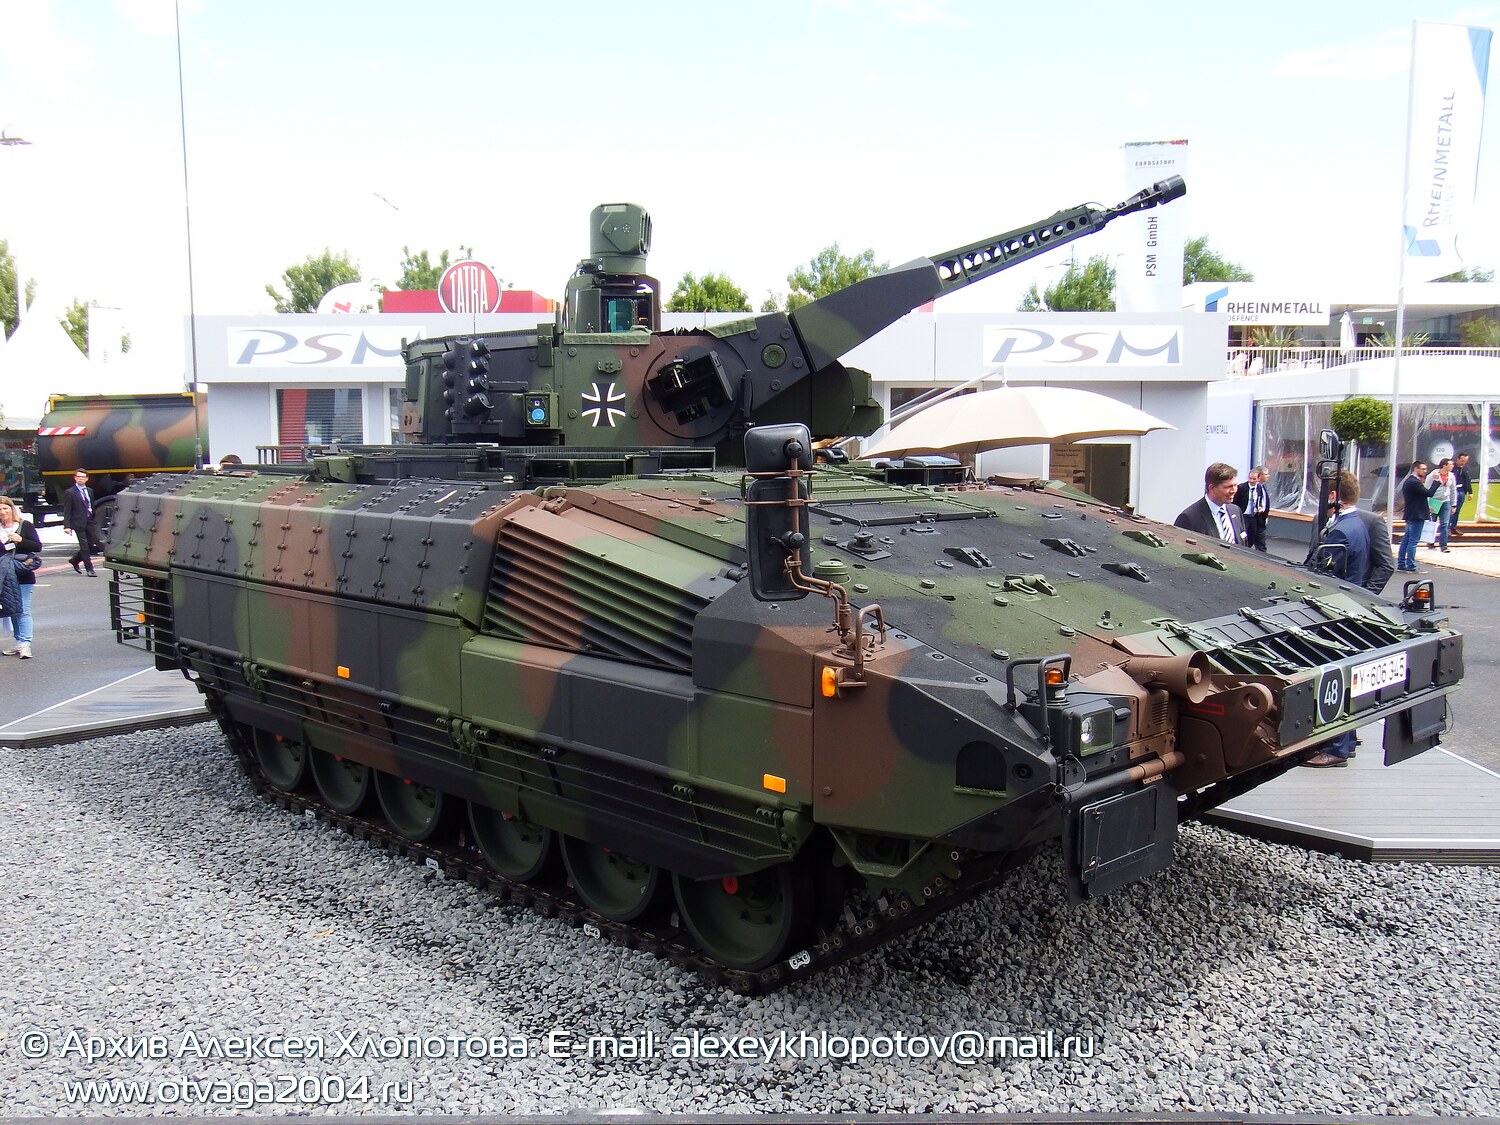 Боевая машина пехоты «Puma» - фотообзор и фотодетализация